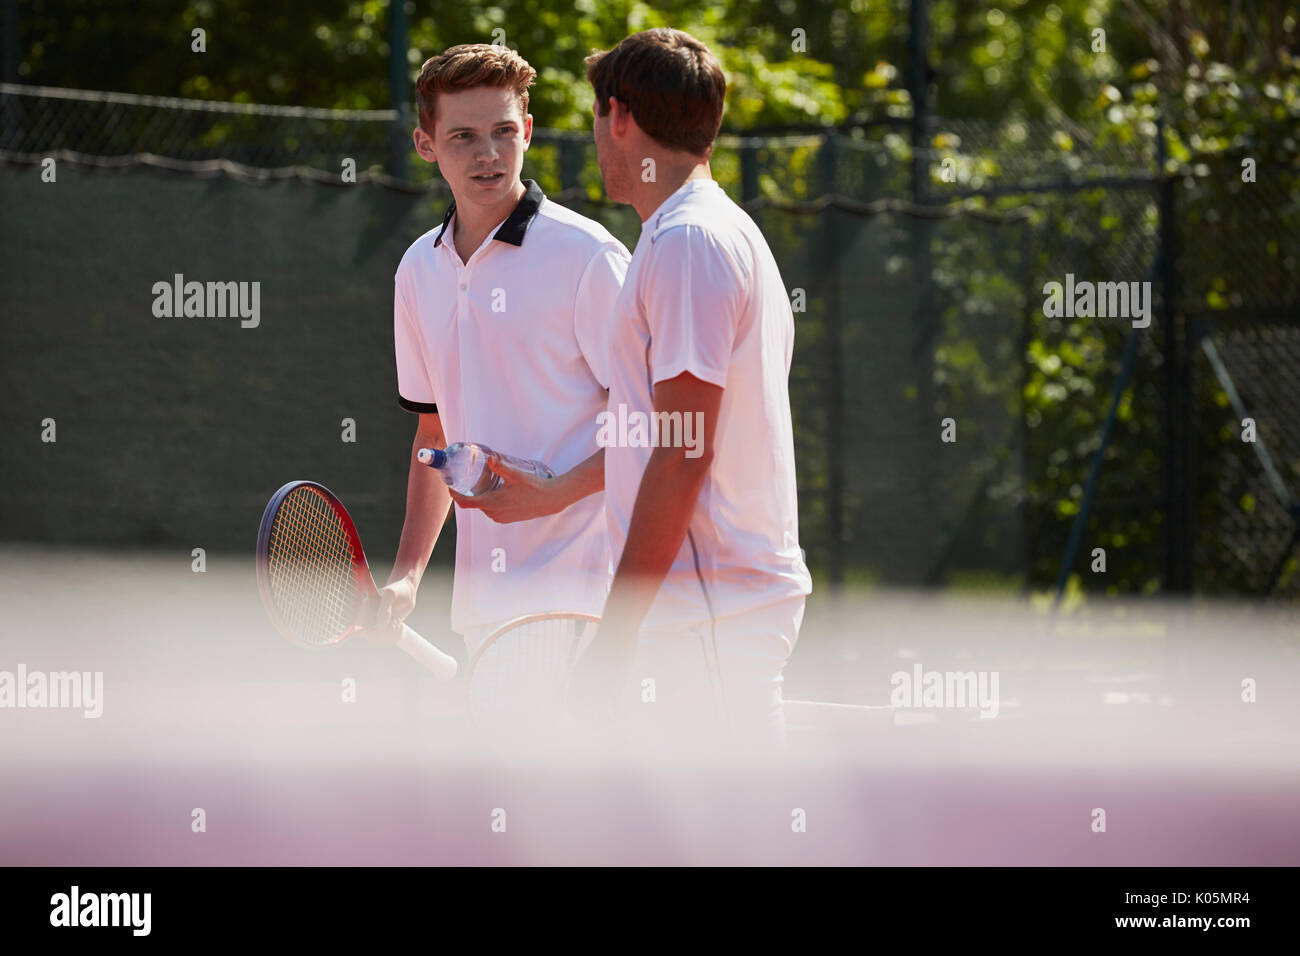 Tennis maschile i giocatori con racchette da tennis parlando sul soleggiato Campo da tennis Foto Stock